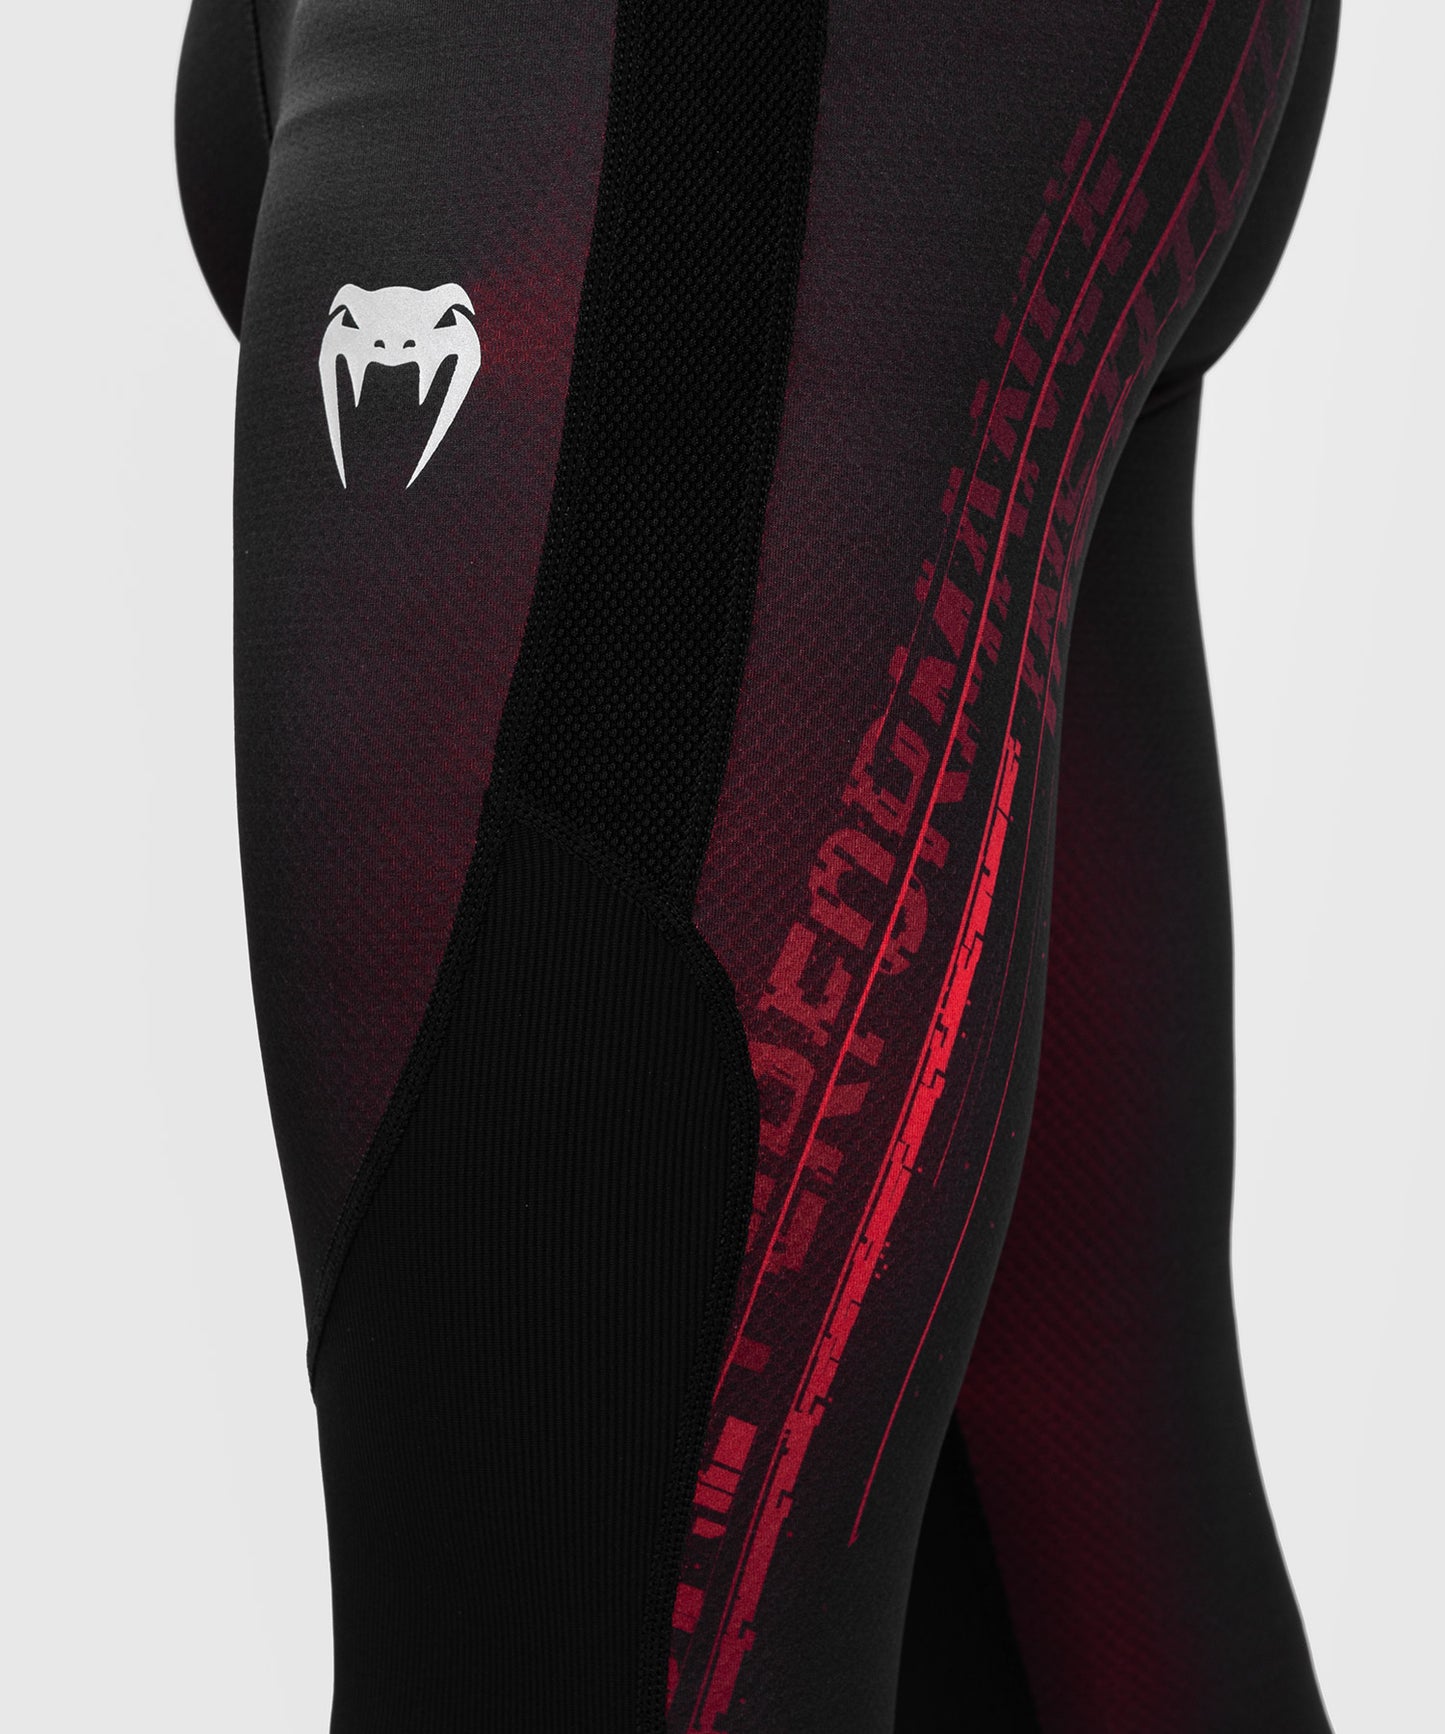 Pantalon de compression pour hommes UFC Performance Institute 2.0 - Noir/Rouge